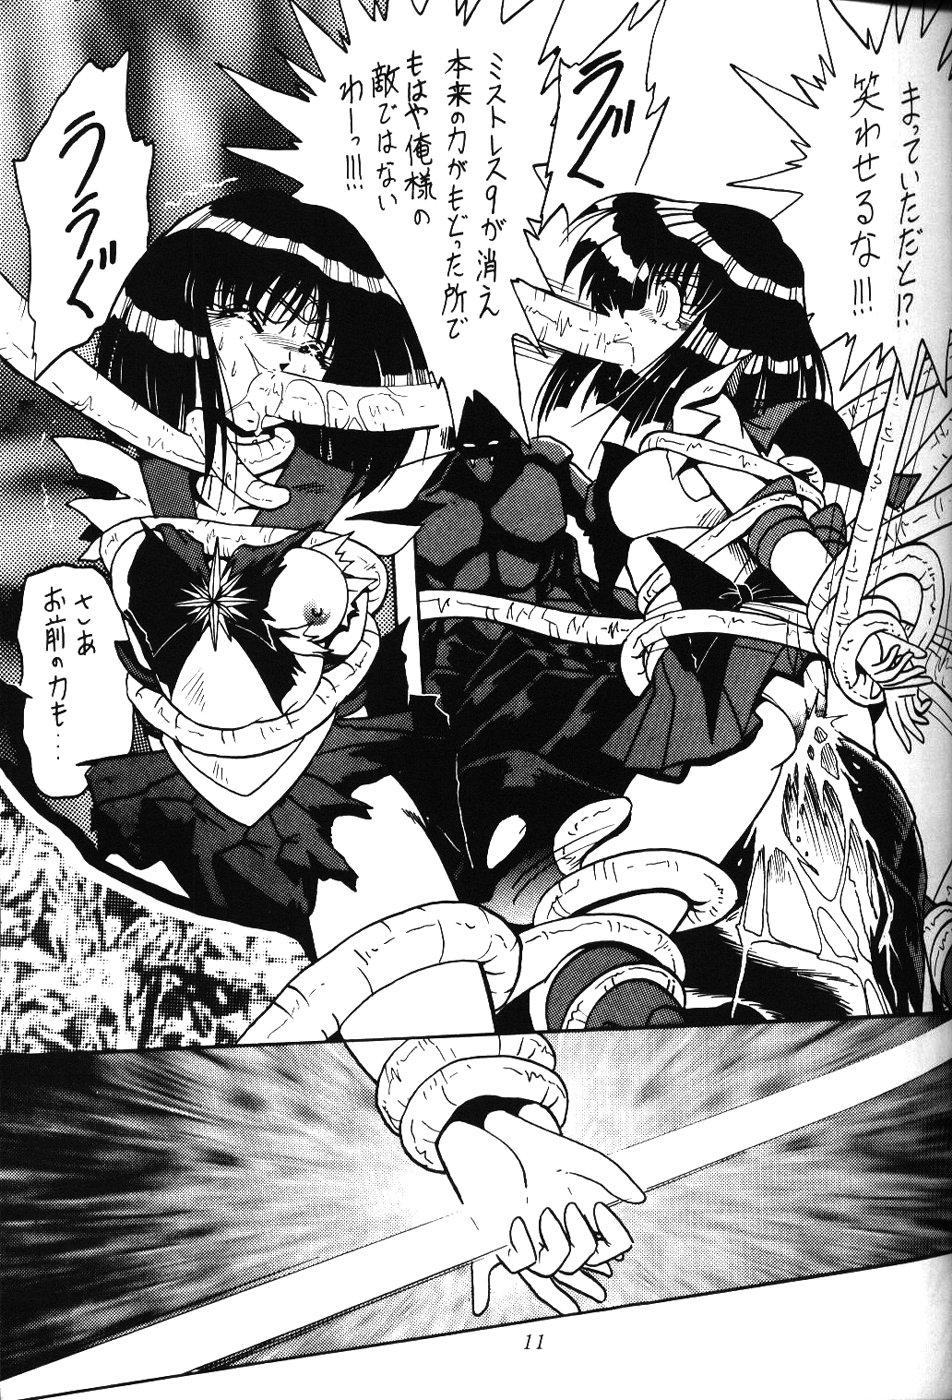 Kink 2D-Shooting - Sailor moon Fucks - Page 10